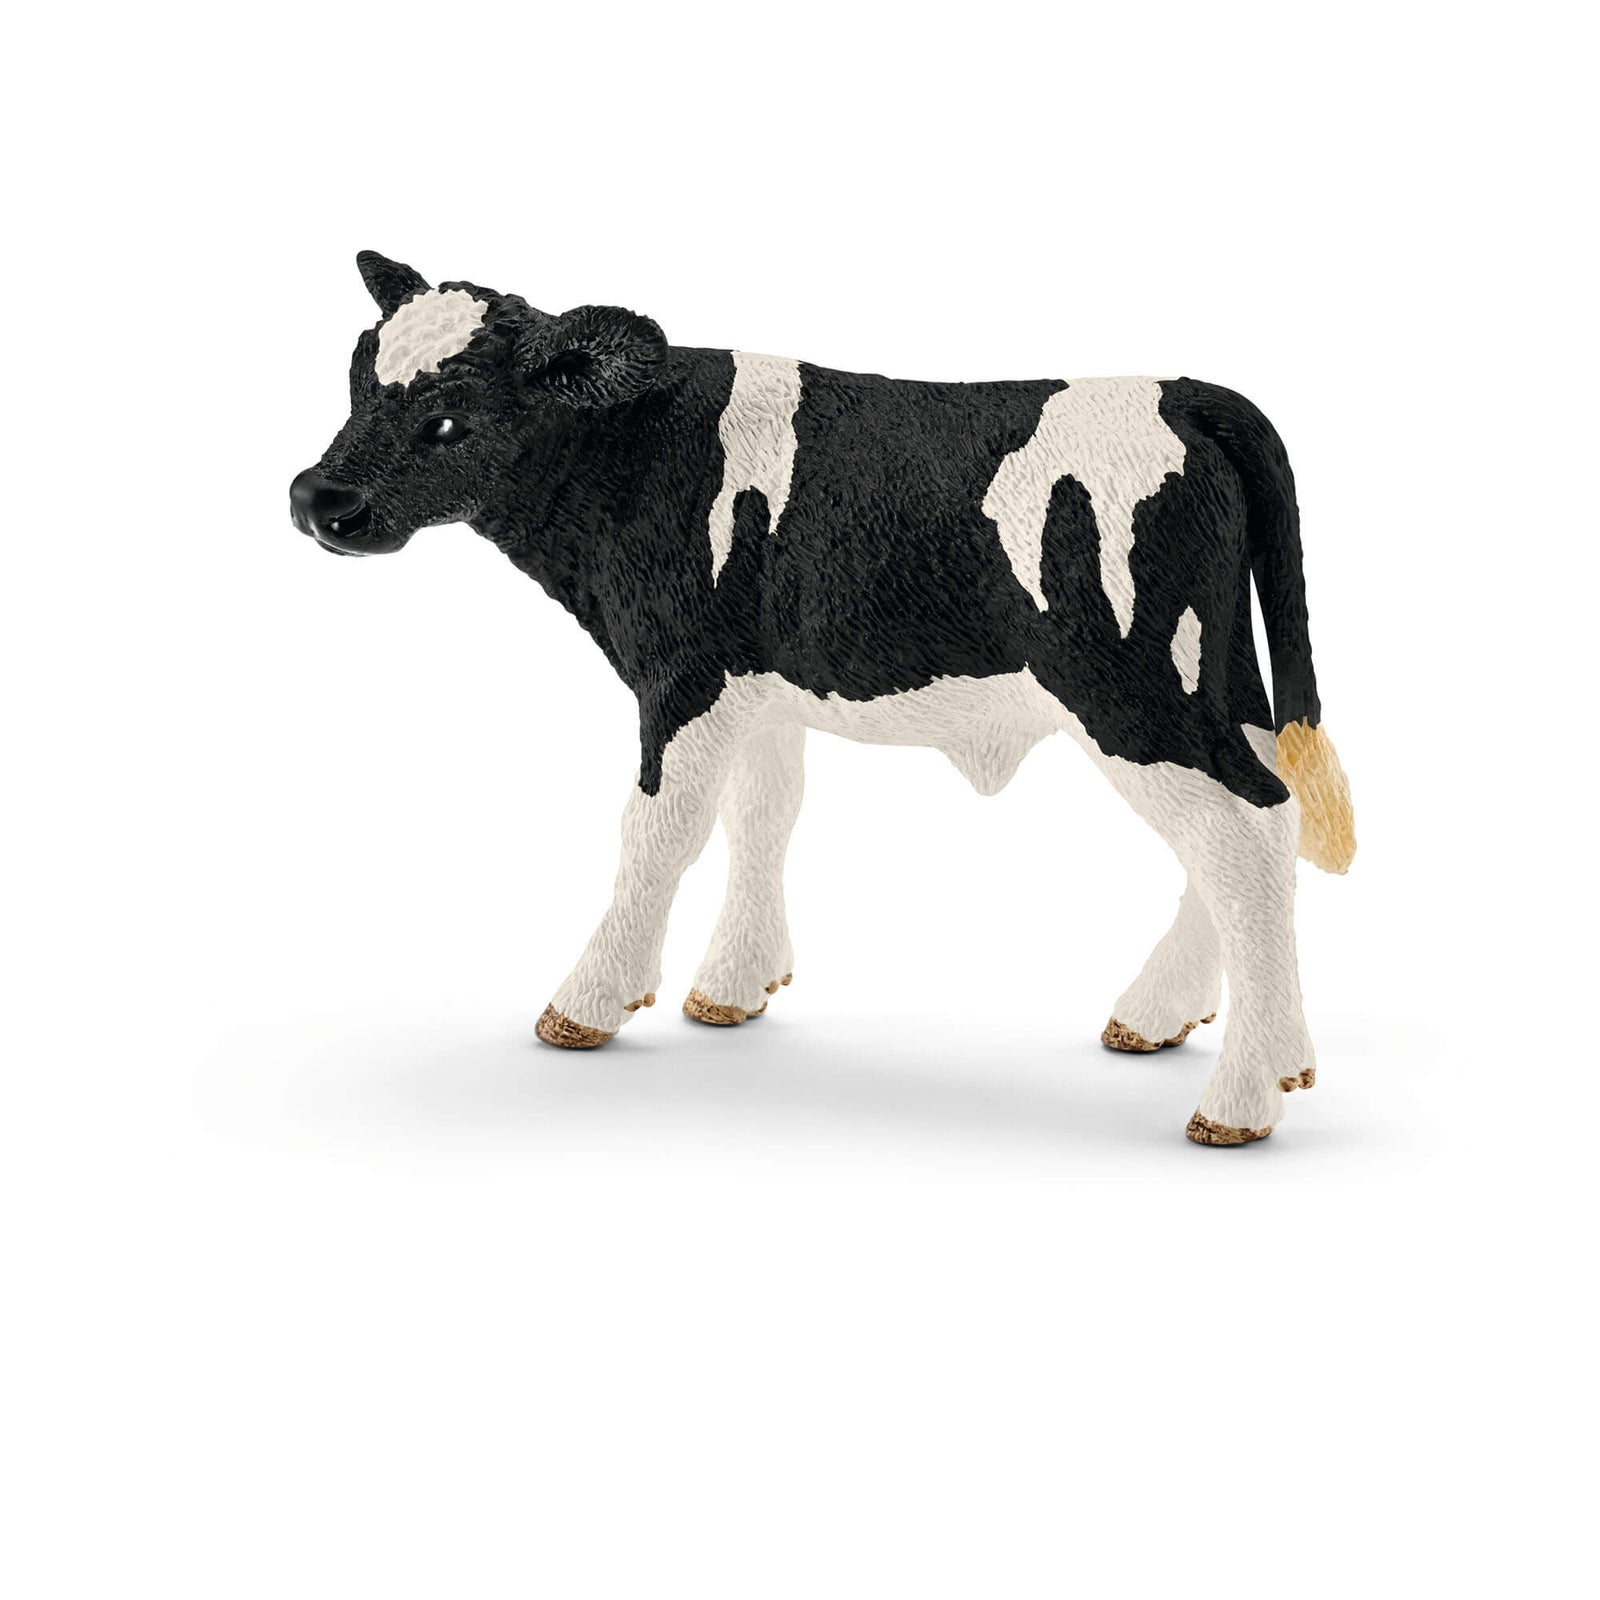 Schleich Farm World Holstein Calf Animal Figure